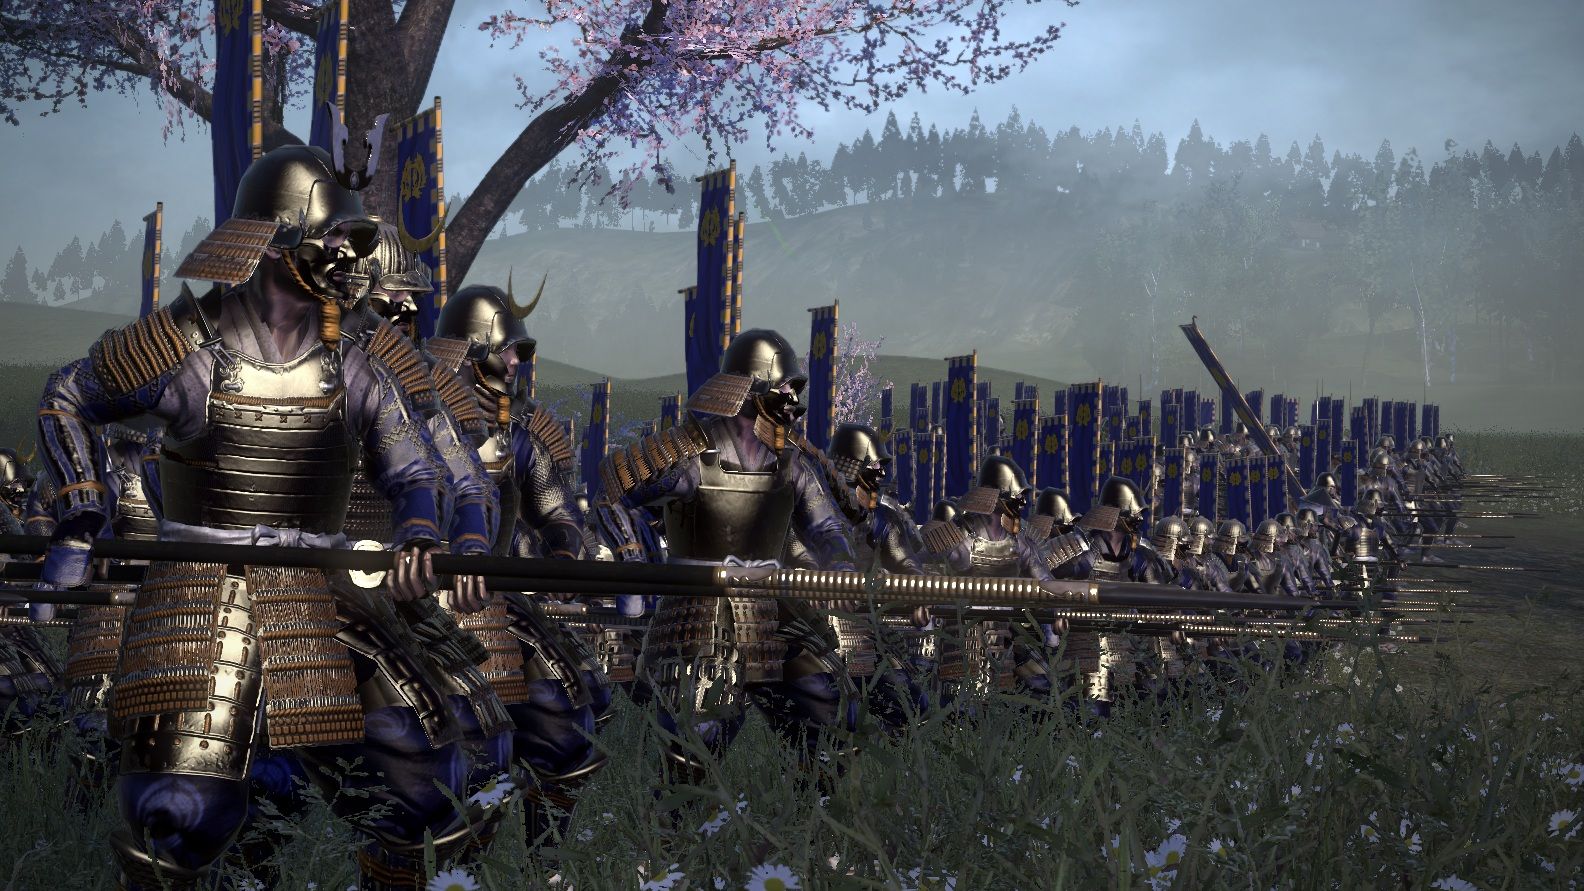 shogun total war civil war mod